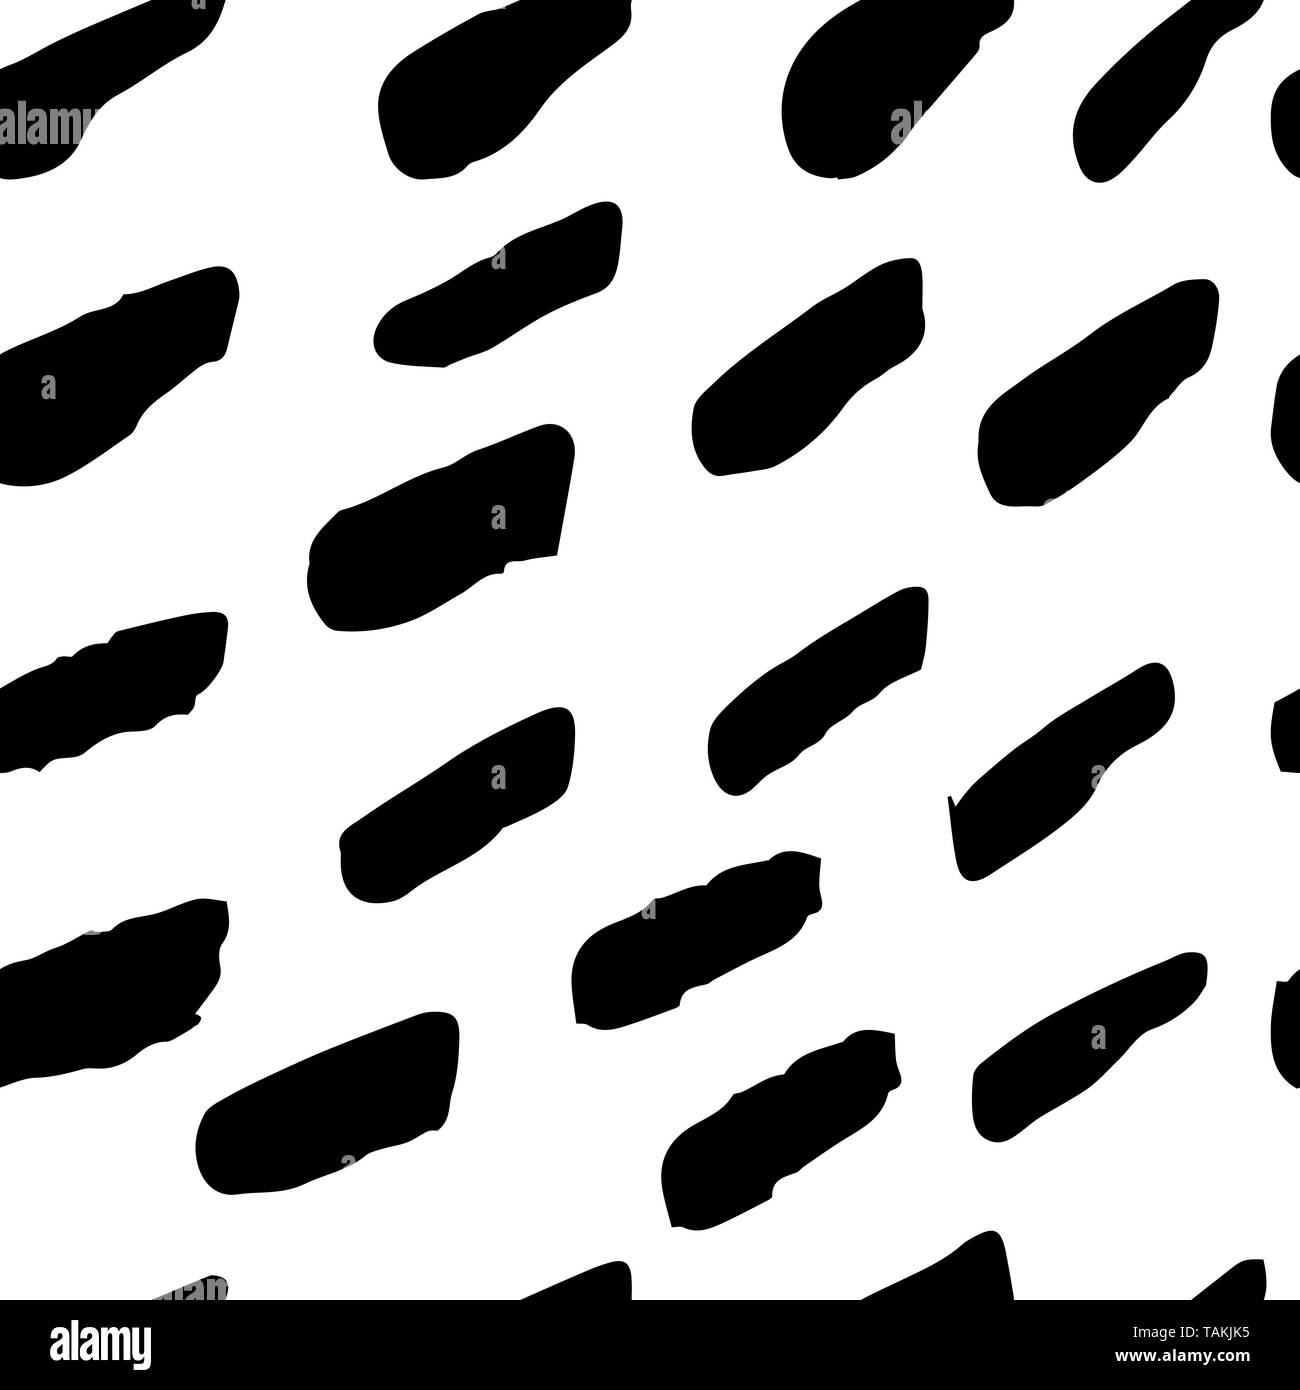 Vektor nahtlose Hand zeichnen Streifen Bürste schwarz-weißen Muster. Monochrome skandinavischen Hintergründe der einfachen Primitiven mit Anschlag für textile Design Stock Vektor